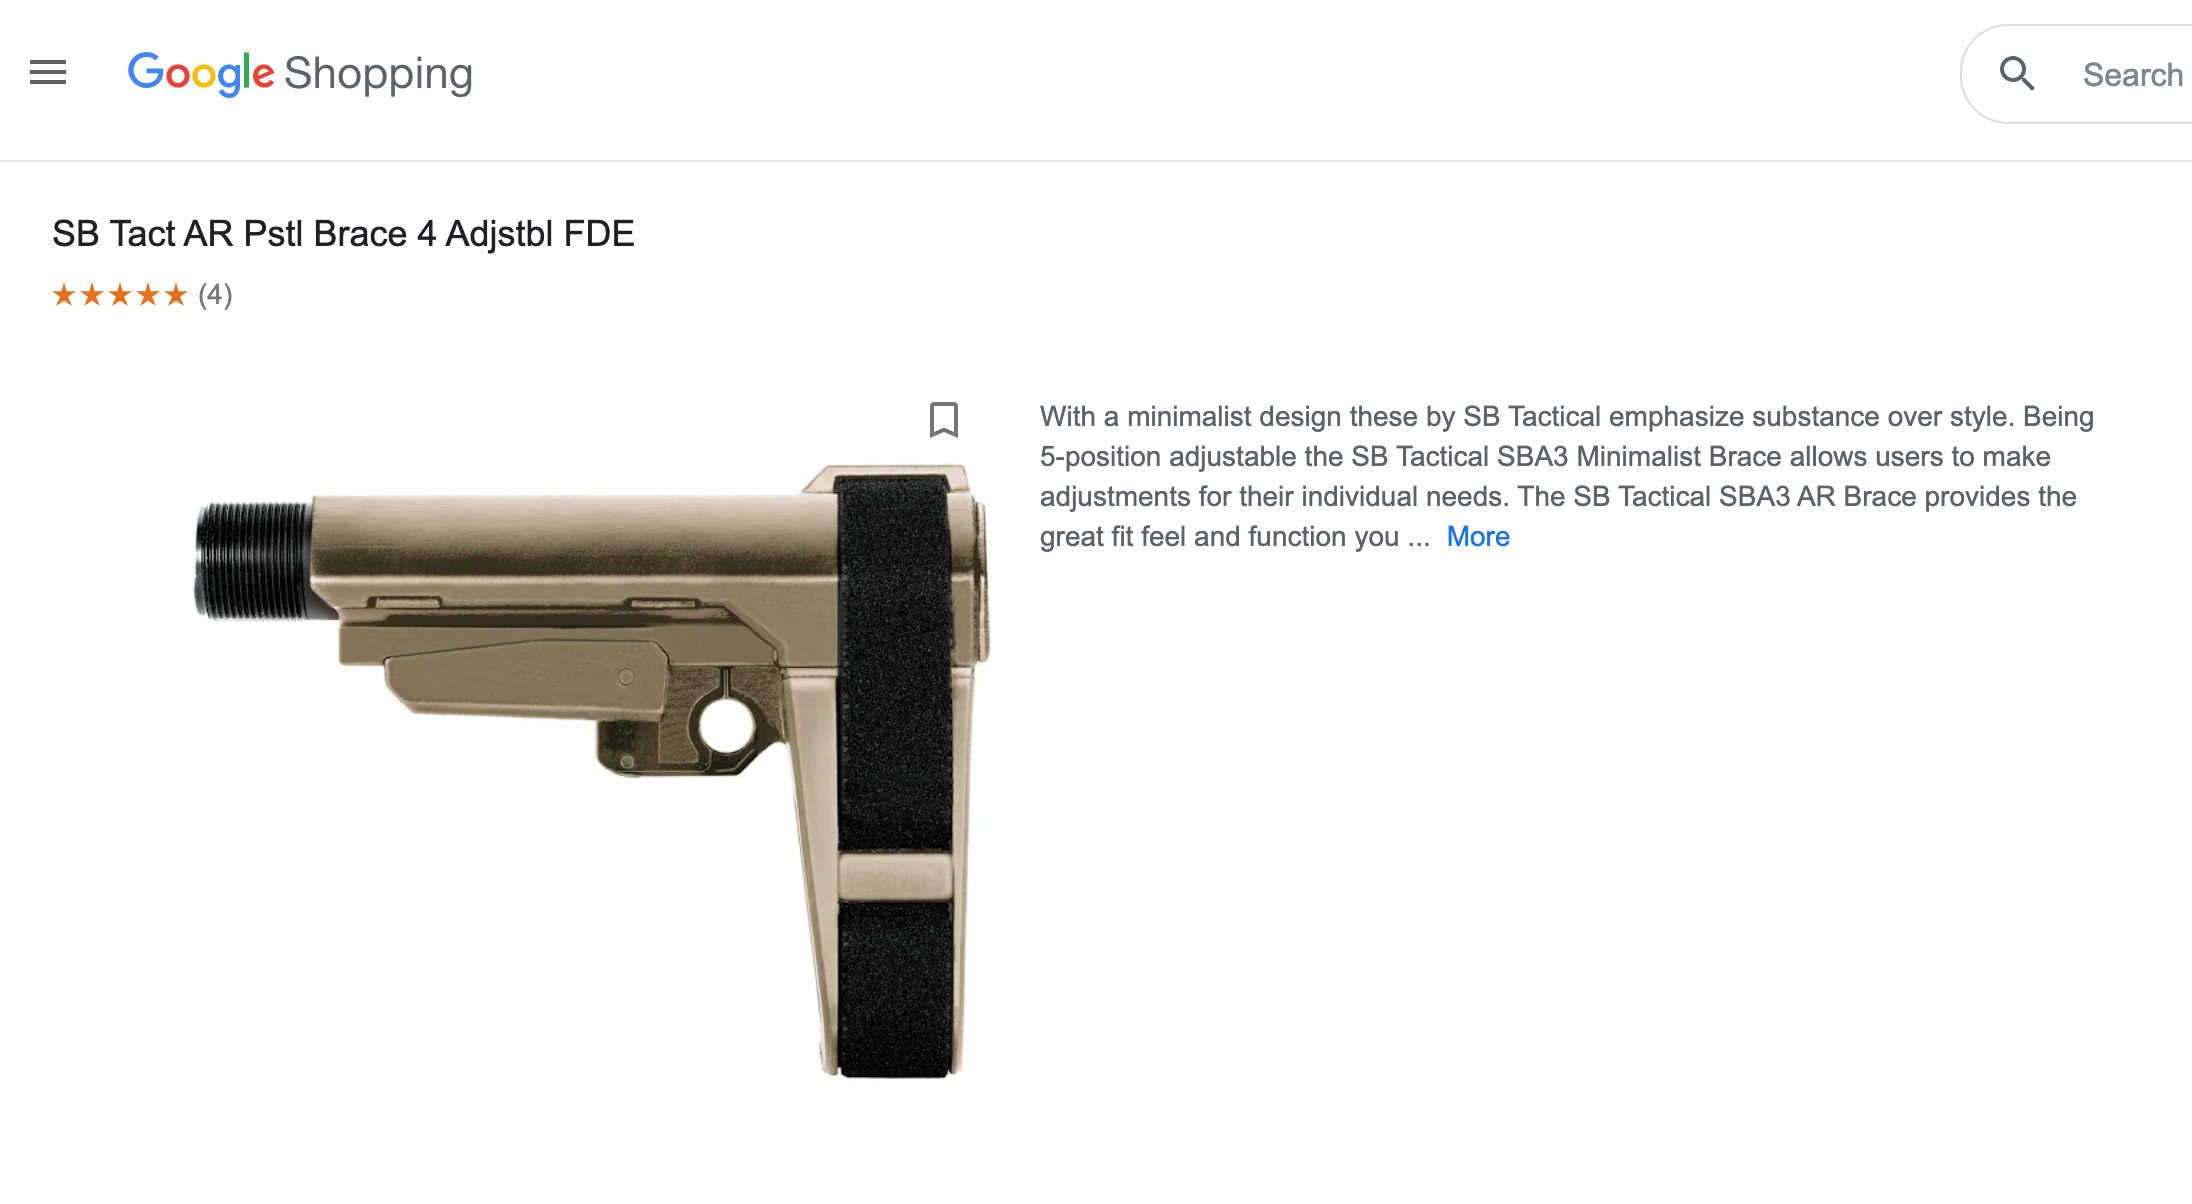 Major Online Marketplaces Allowed the Sale of Pistol Braces, Despite Bans